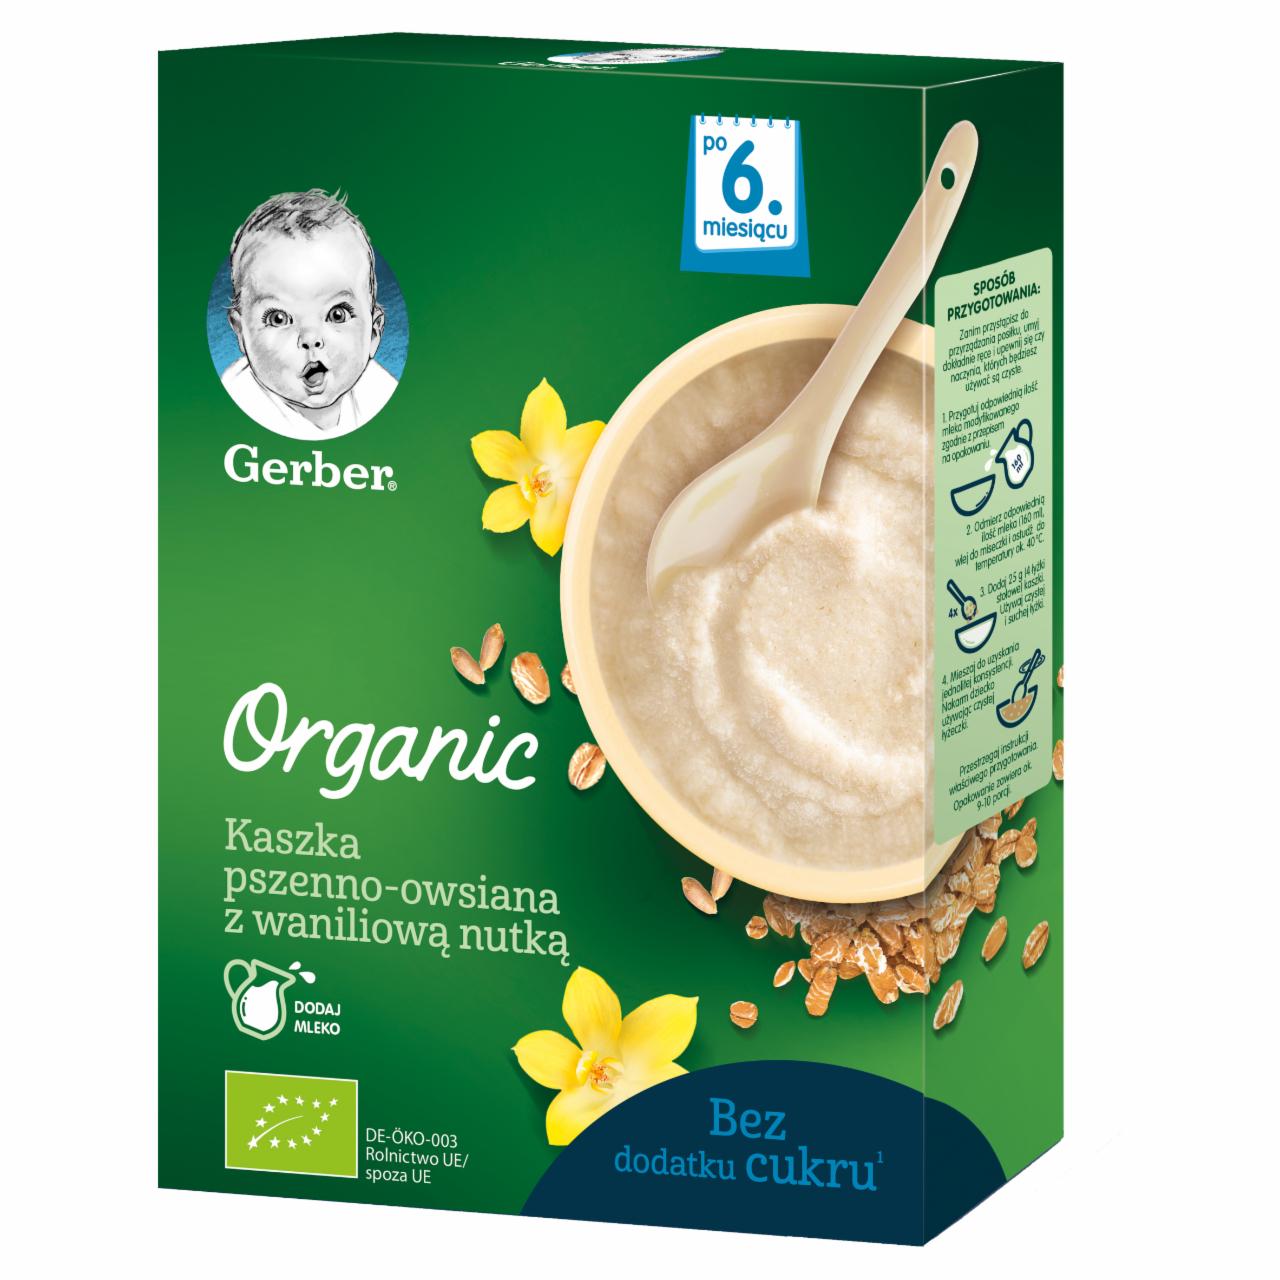 Zdjęcia - Gerber Organic Kaszka pszenno-owsiana z waniliową nutką dla niemowląt po 6. miesiącu 240 g